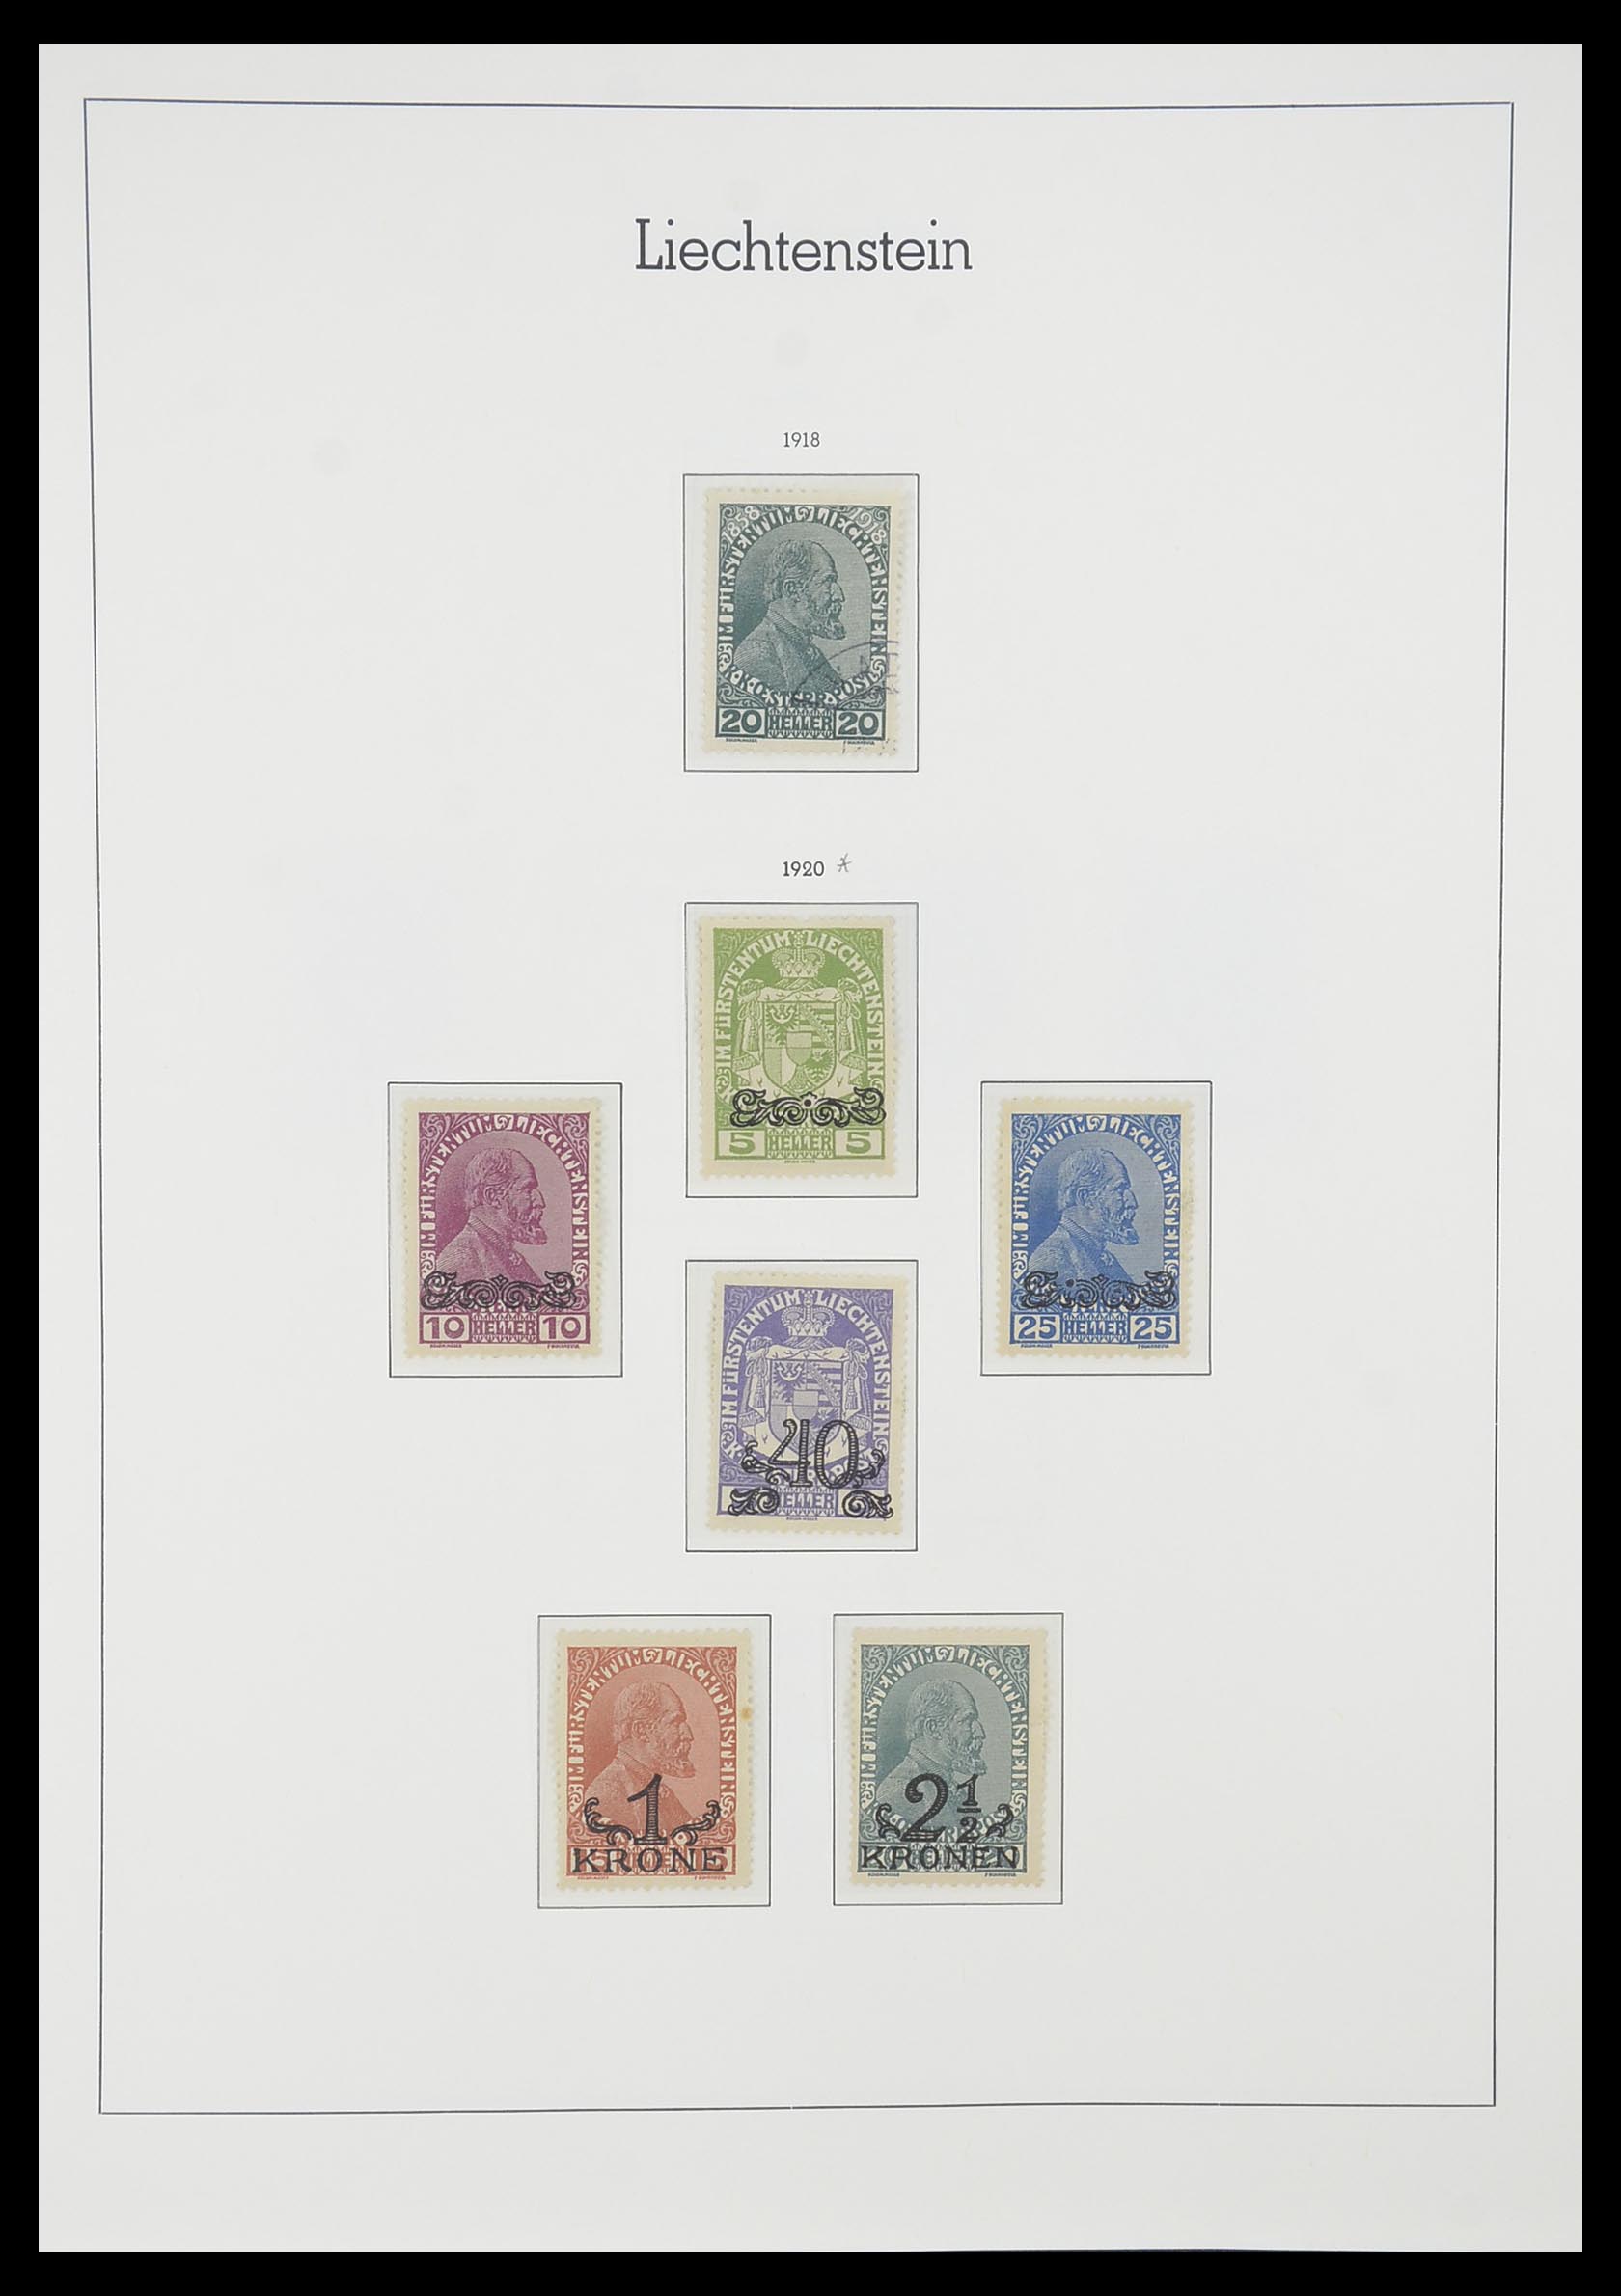 33825 002 - Stamp collection 33825 Liechtenstein 1912-1997.